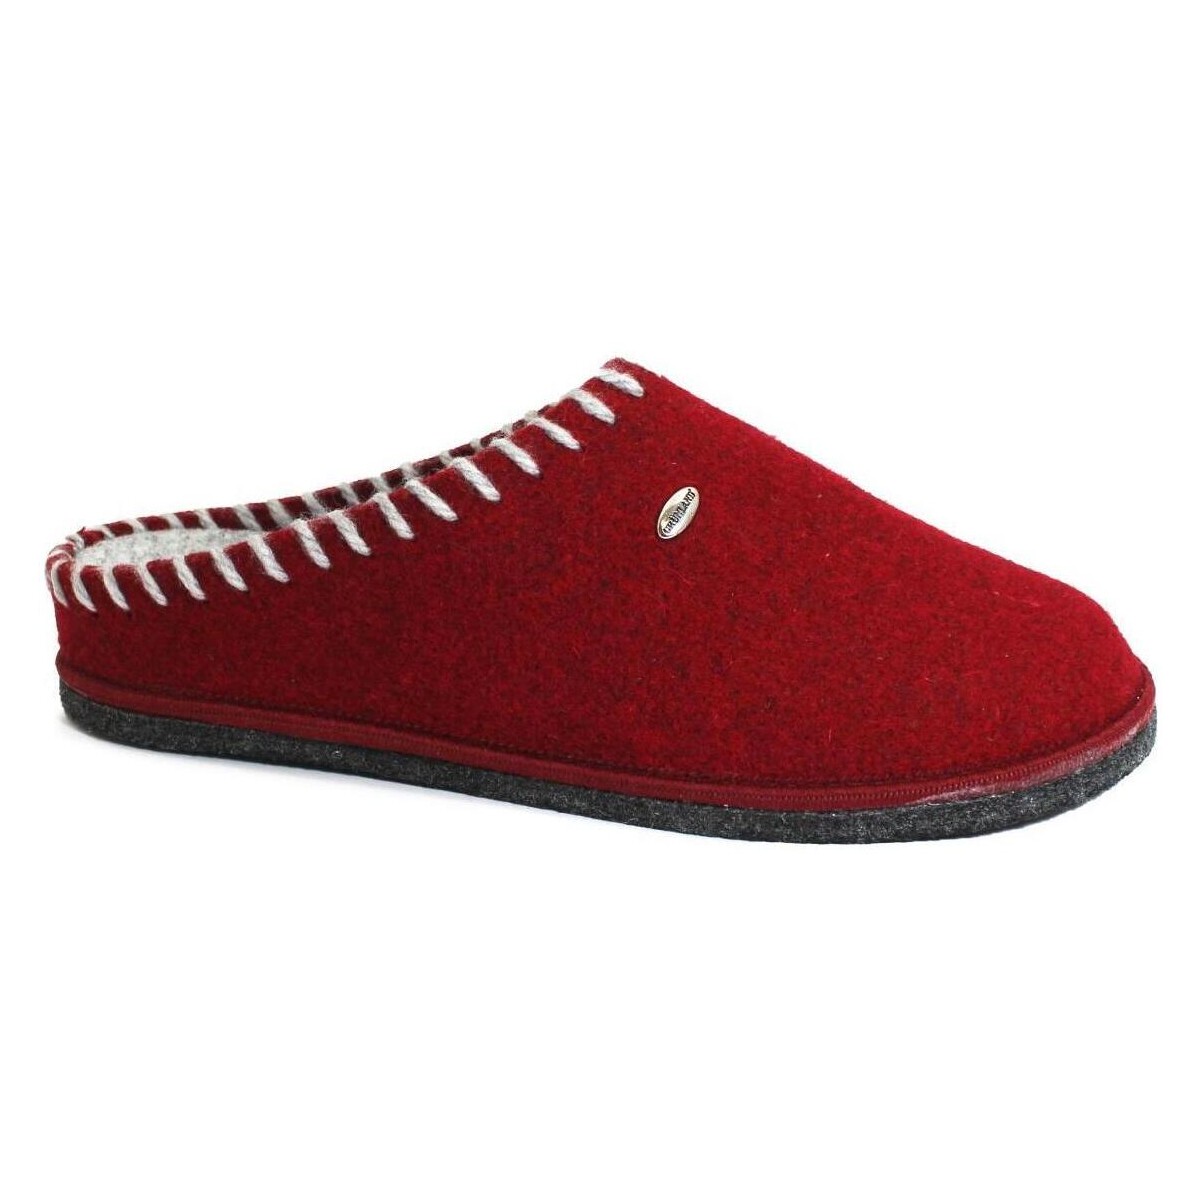 Sapatos Mulher Chinelos Grunland GRU-RRR-CI2937-LG Vermelho